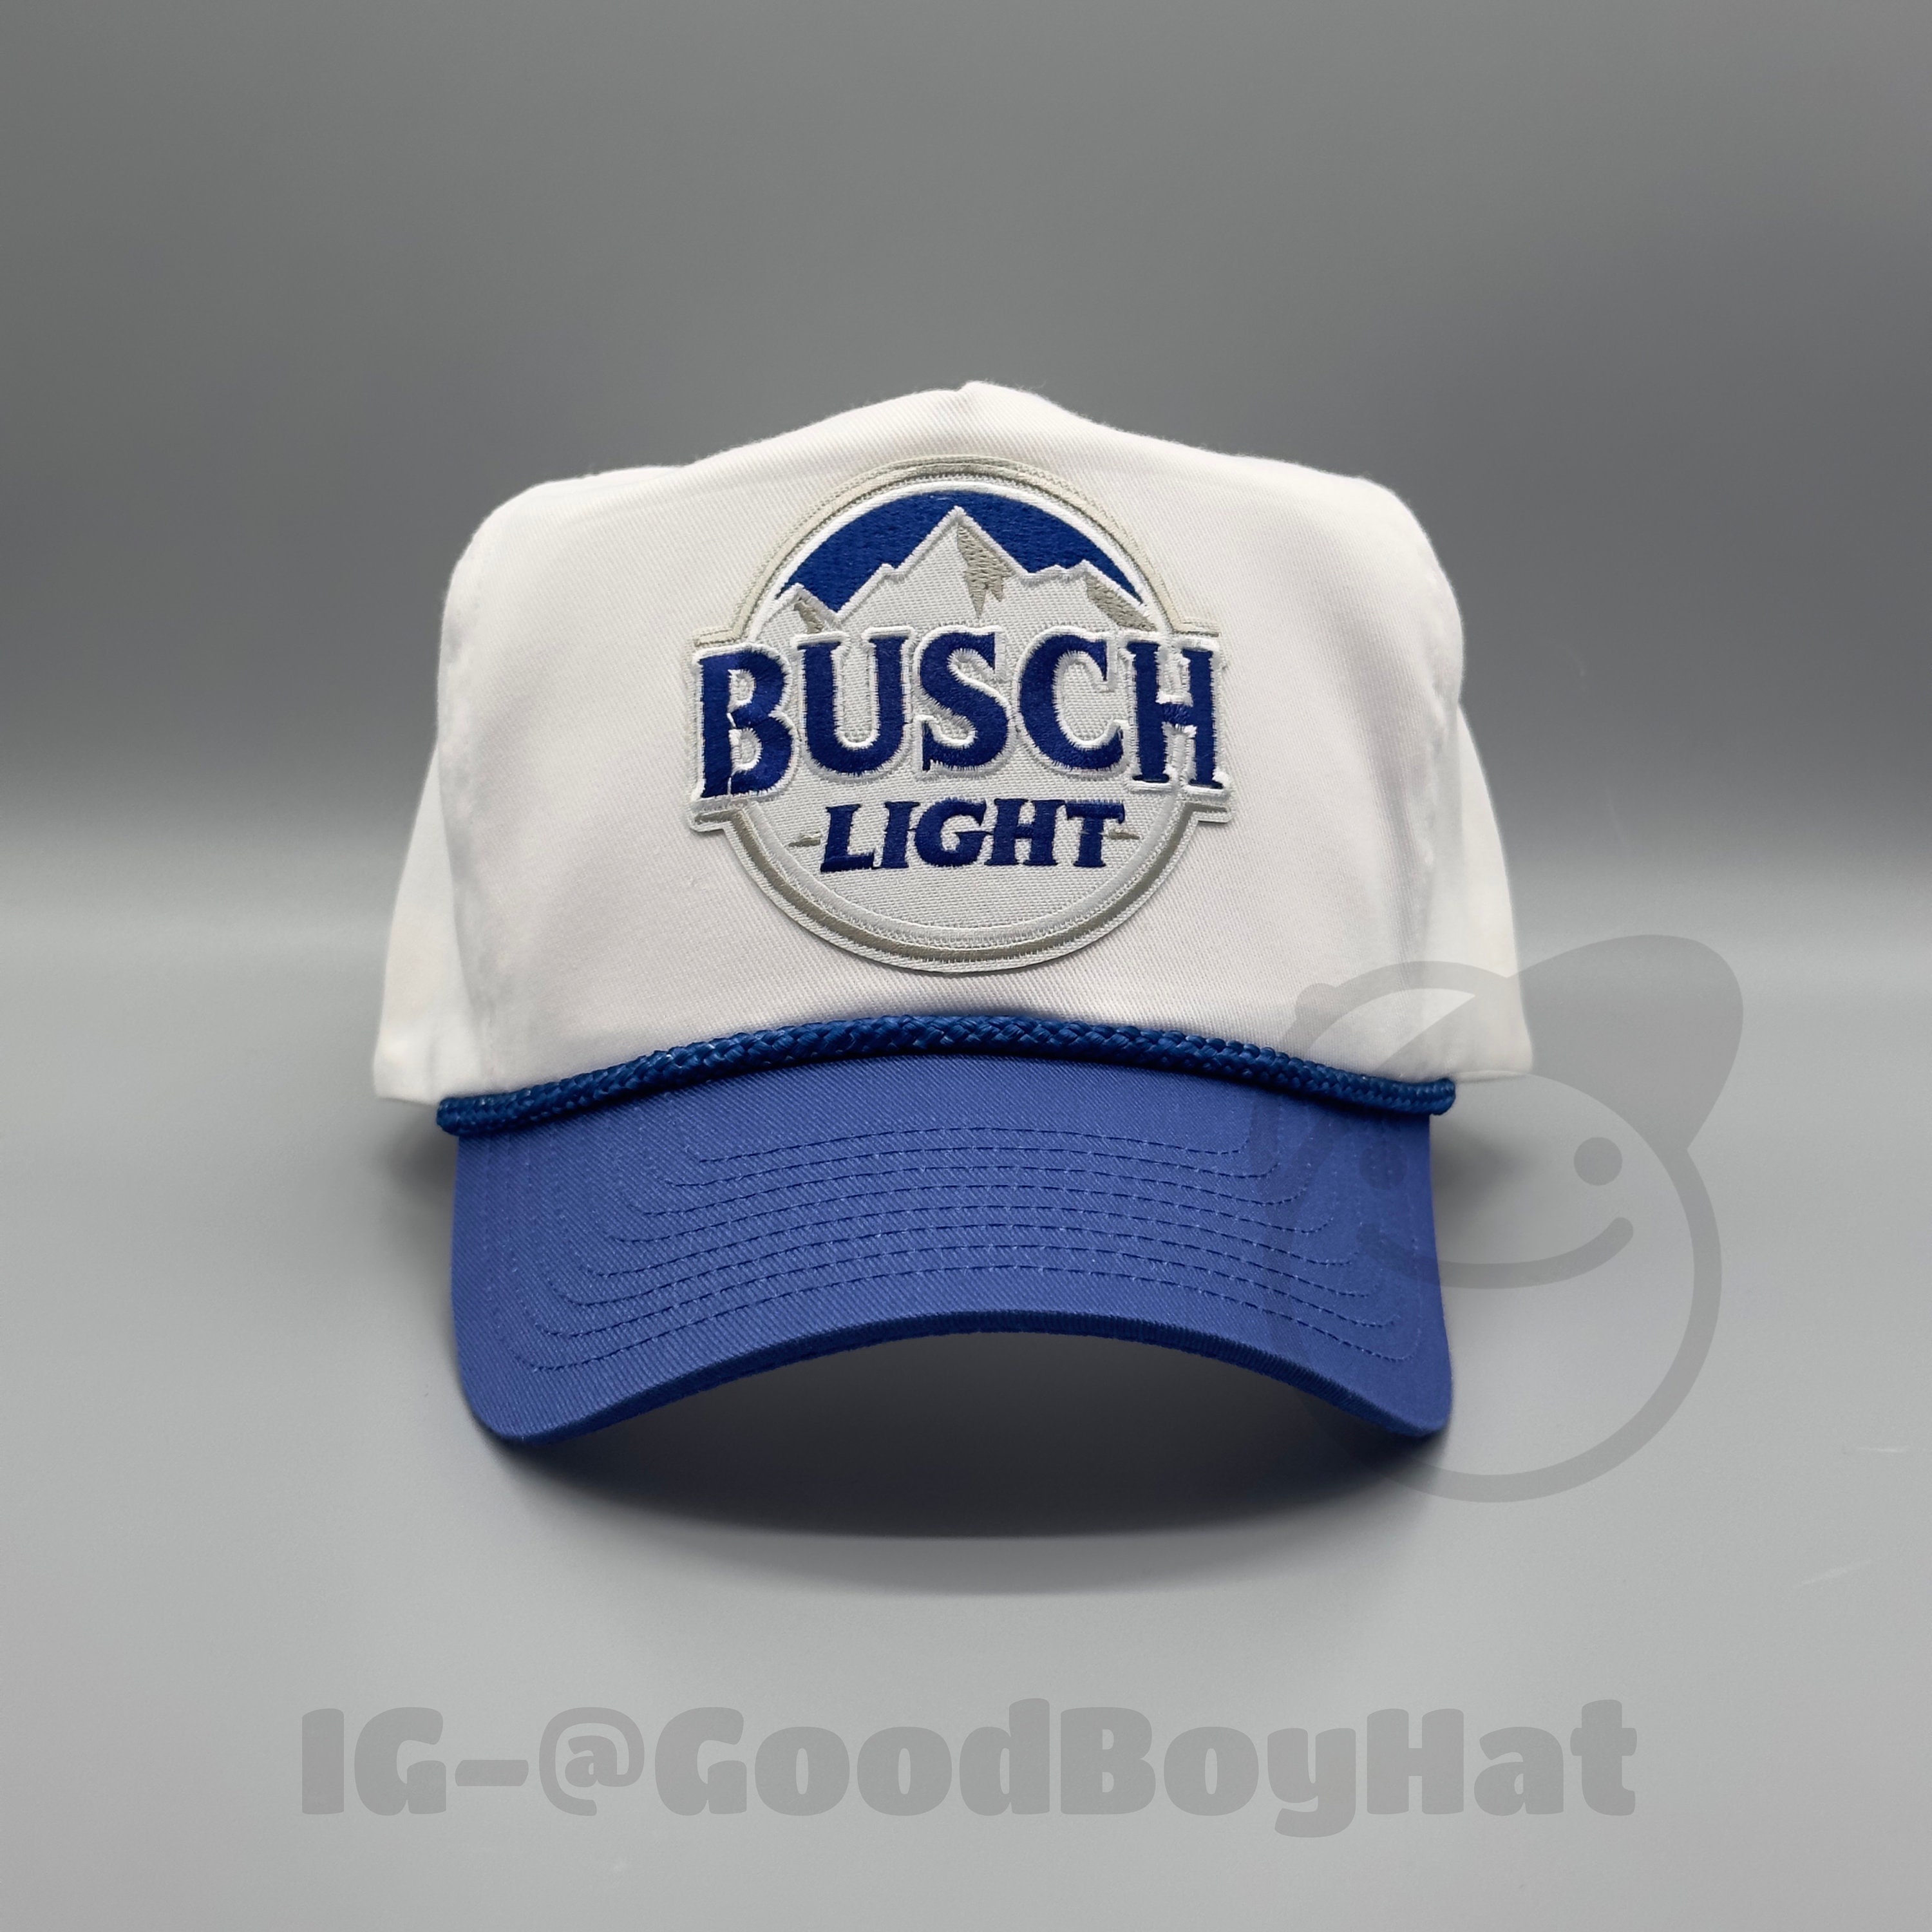 Busch Light Trucker Hat 